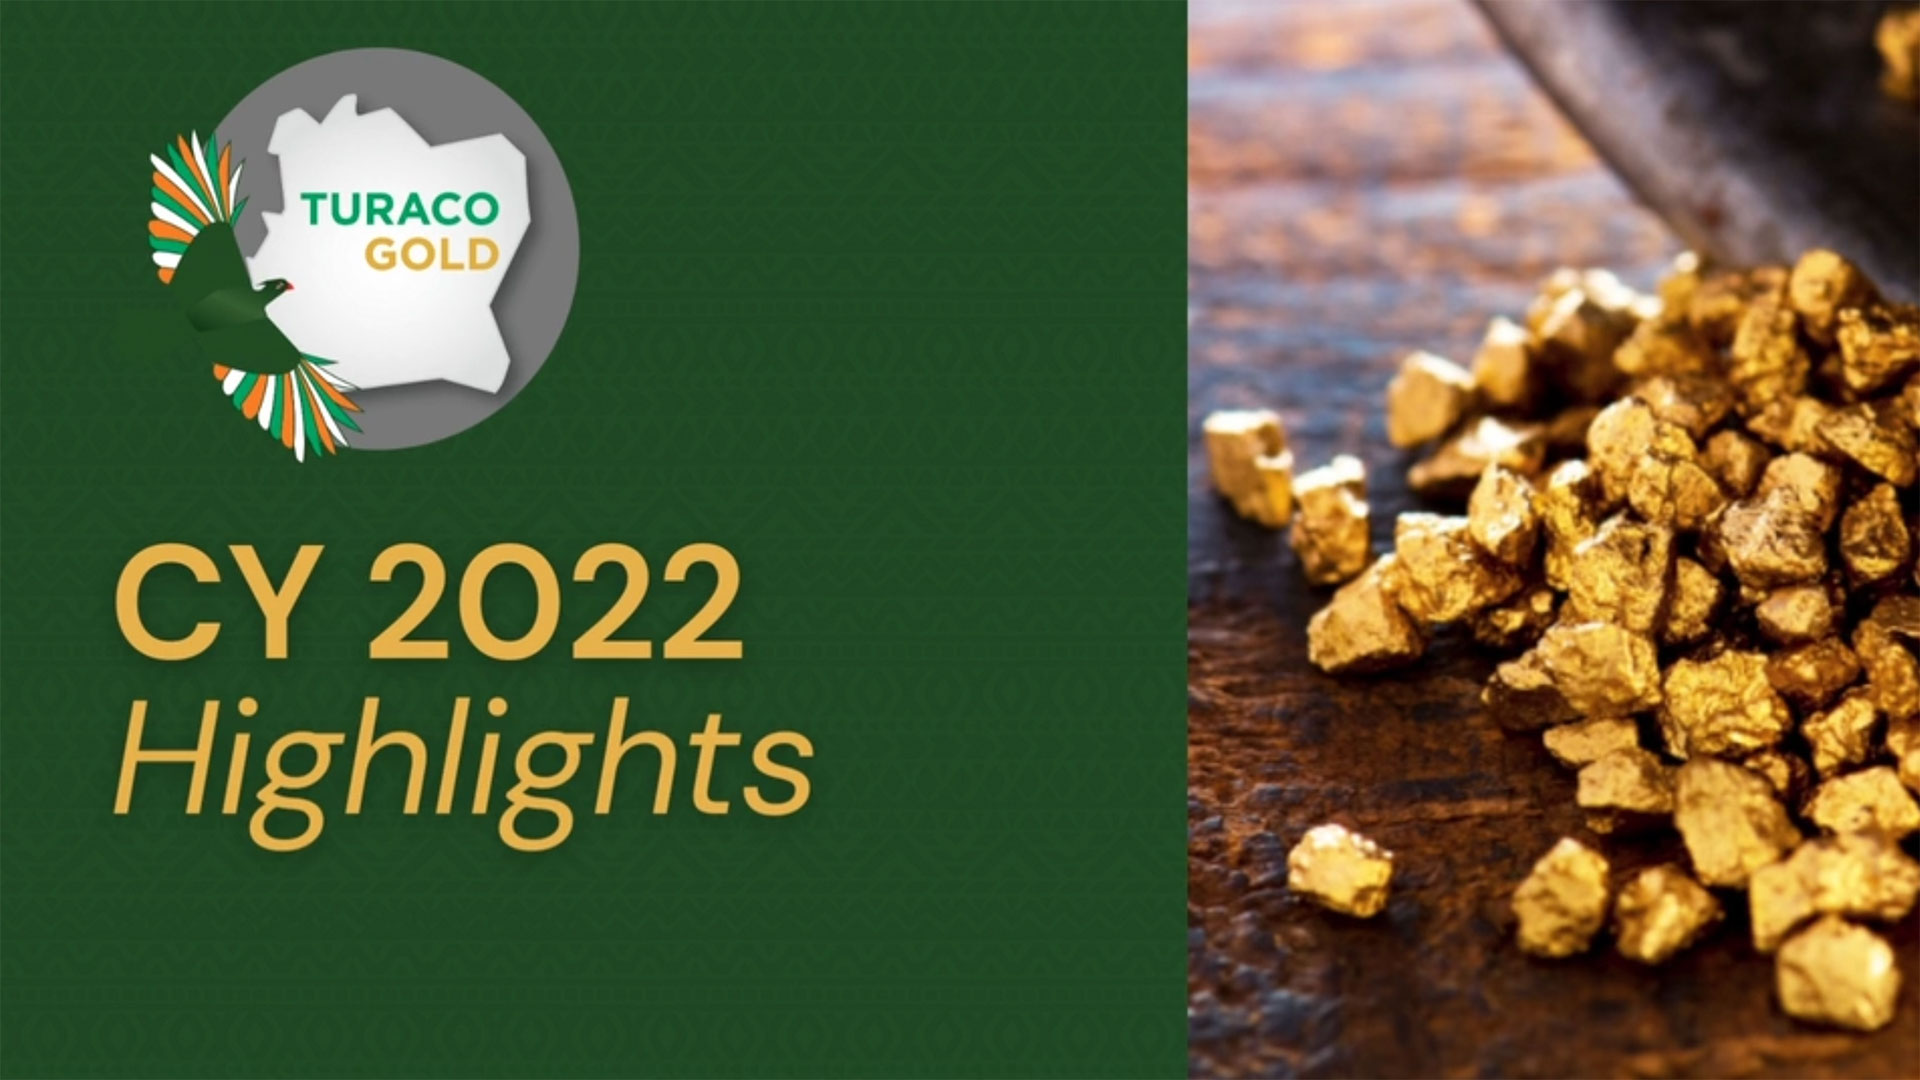 Turaco Gold (ASX:TCG) CY 2022 Highlights